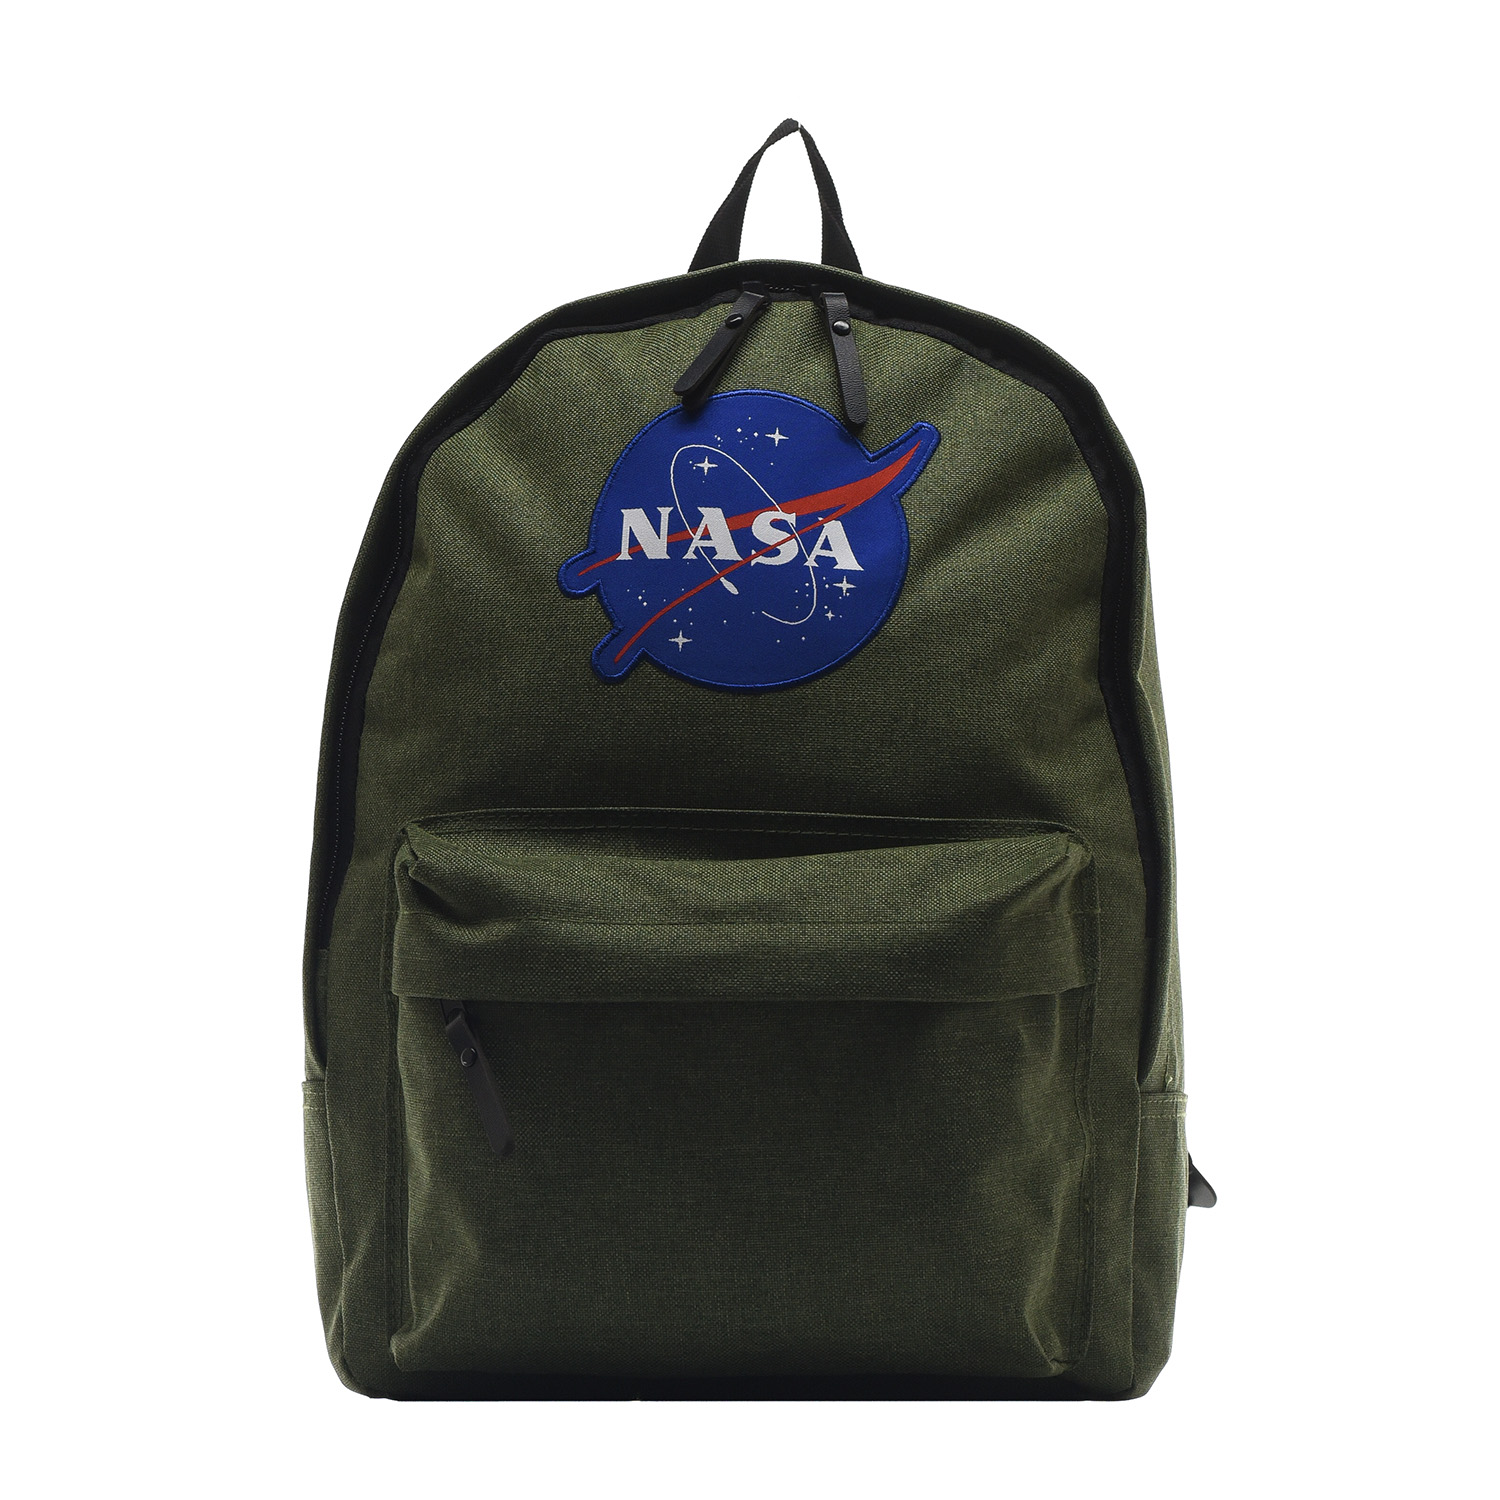 Рюкзак NASA 086109002-OLIVE-17 - фото 5